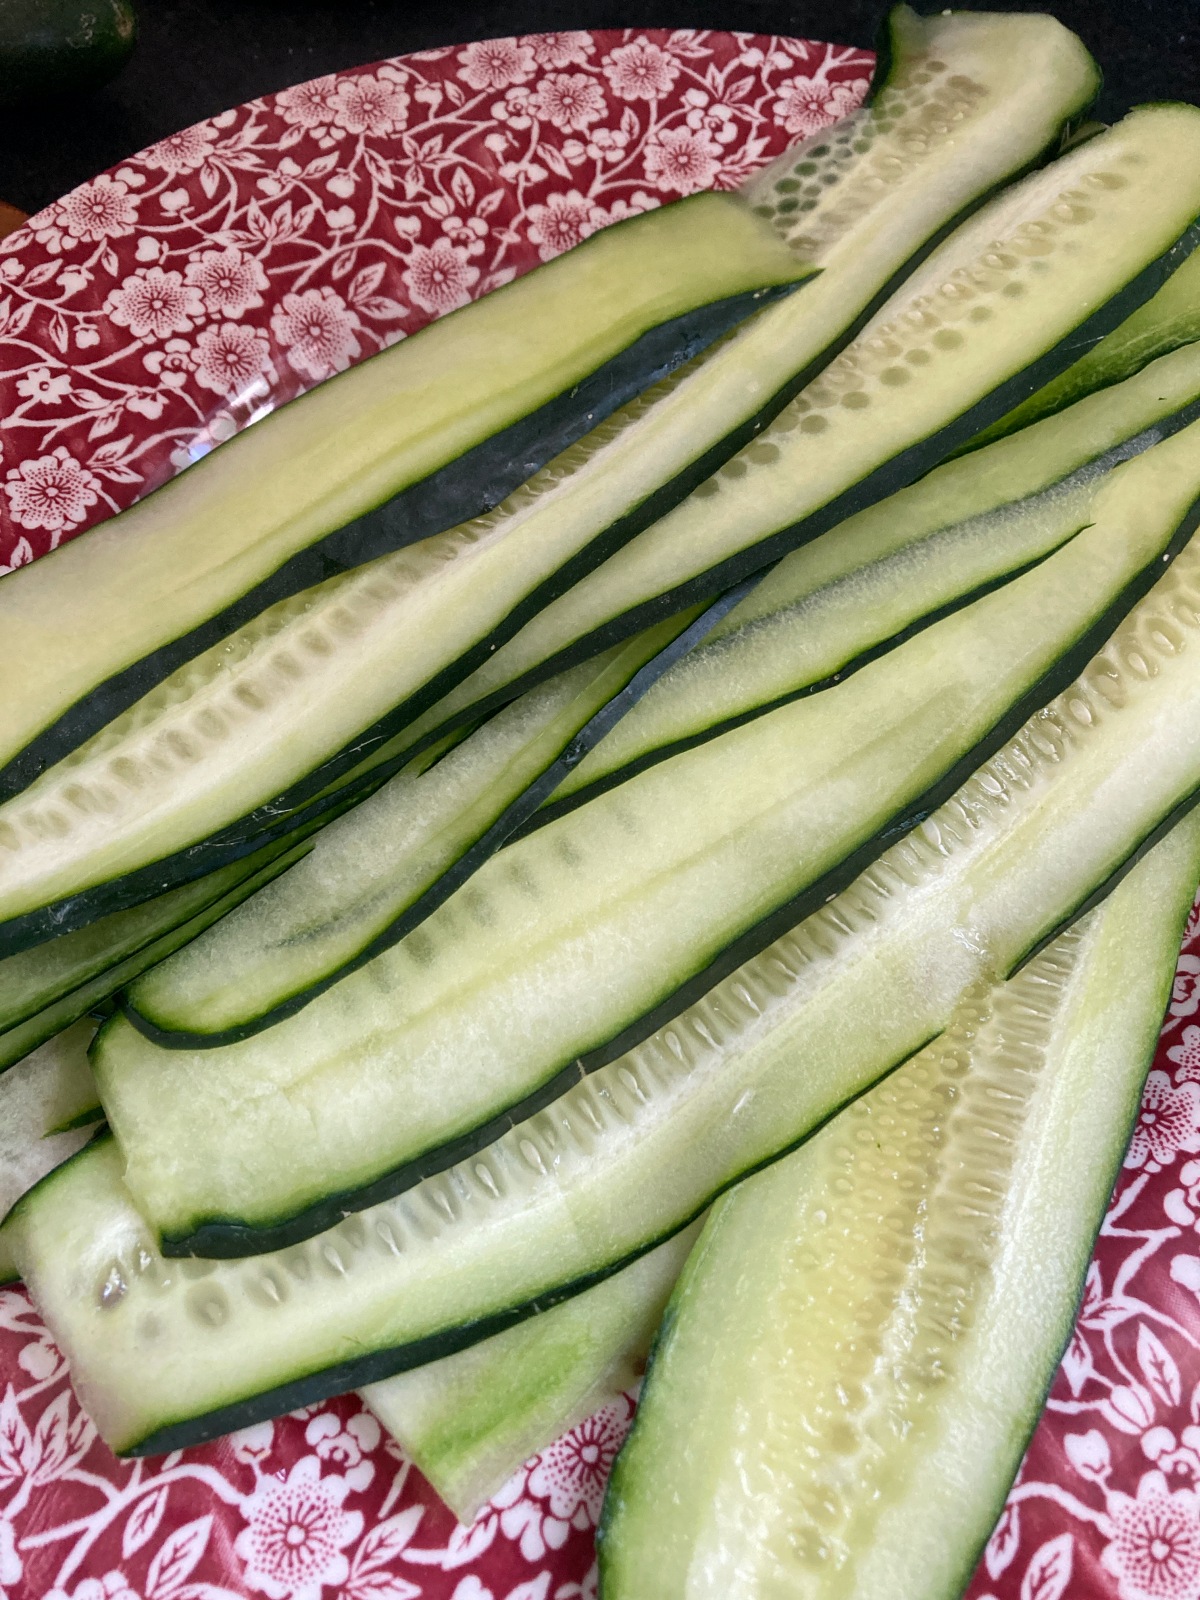 making Cucumber Feta Rolls